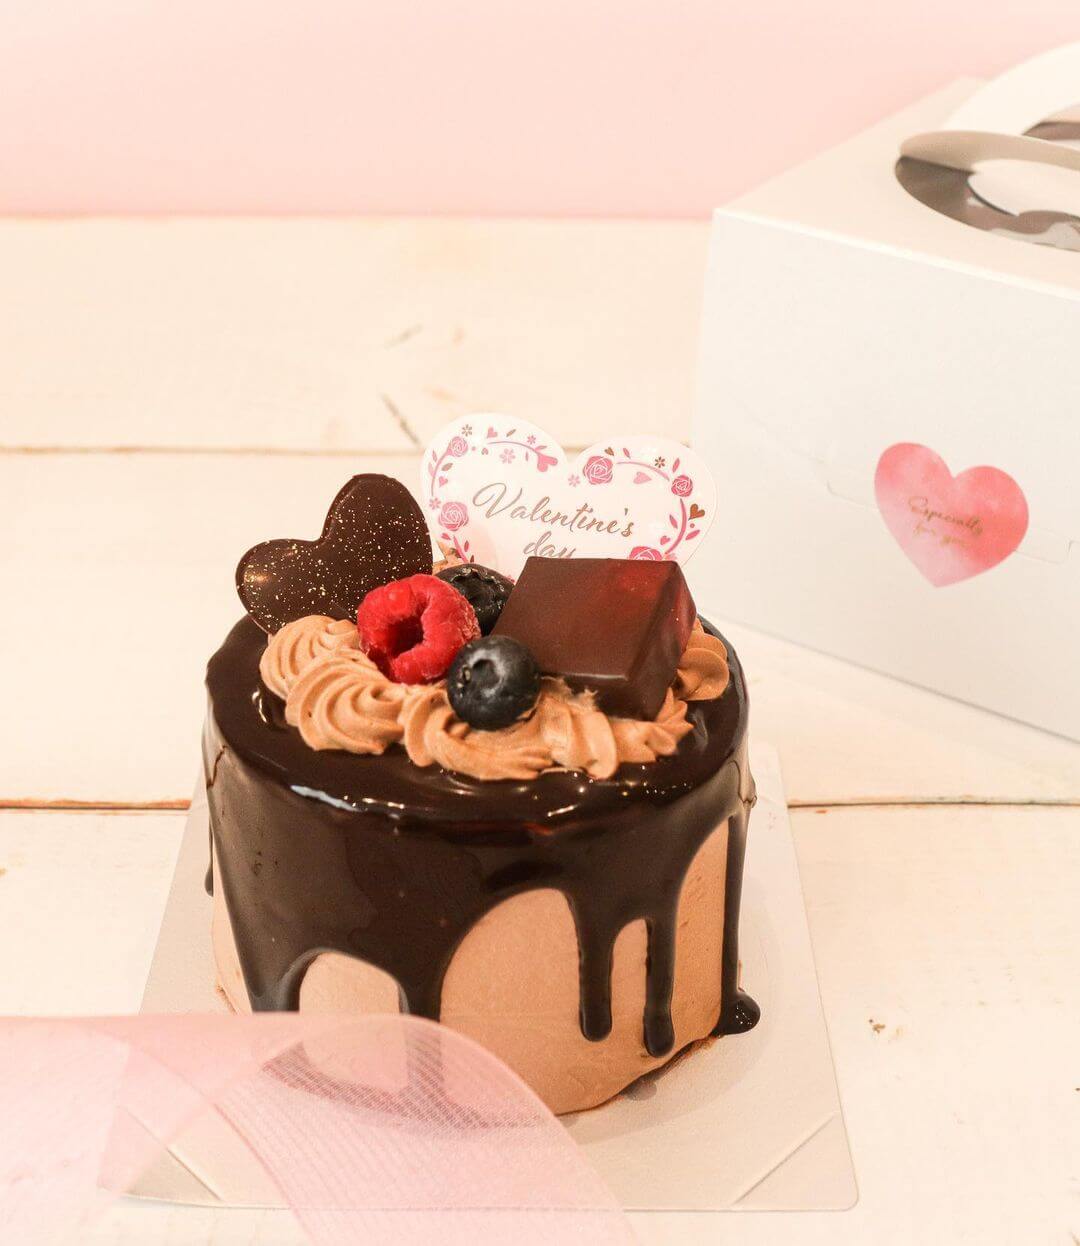 奏春楼のバレンタイン限定ケーキ『生チョコロールデコレーション』